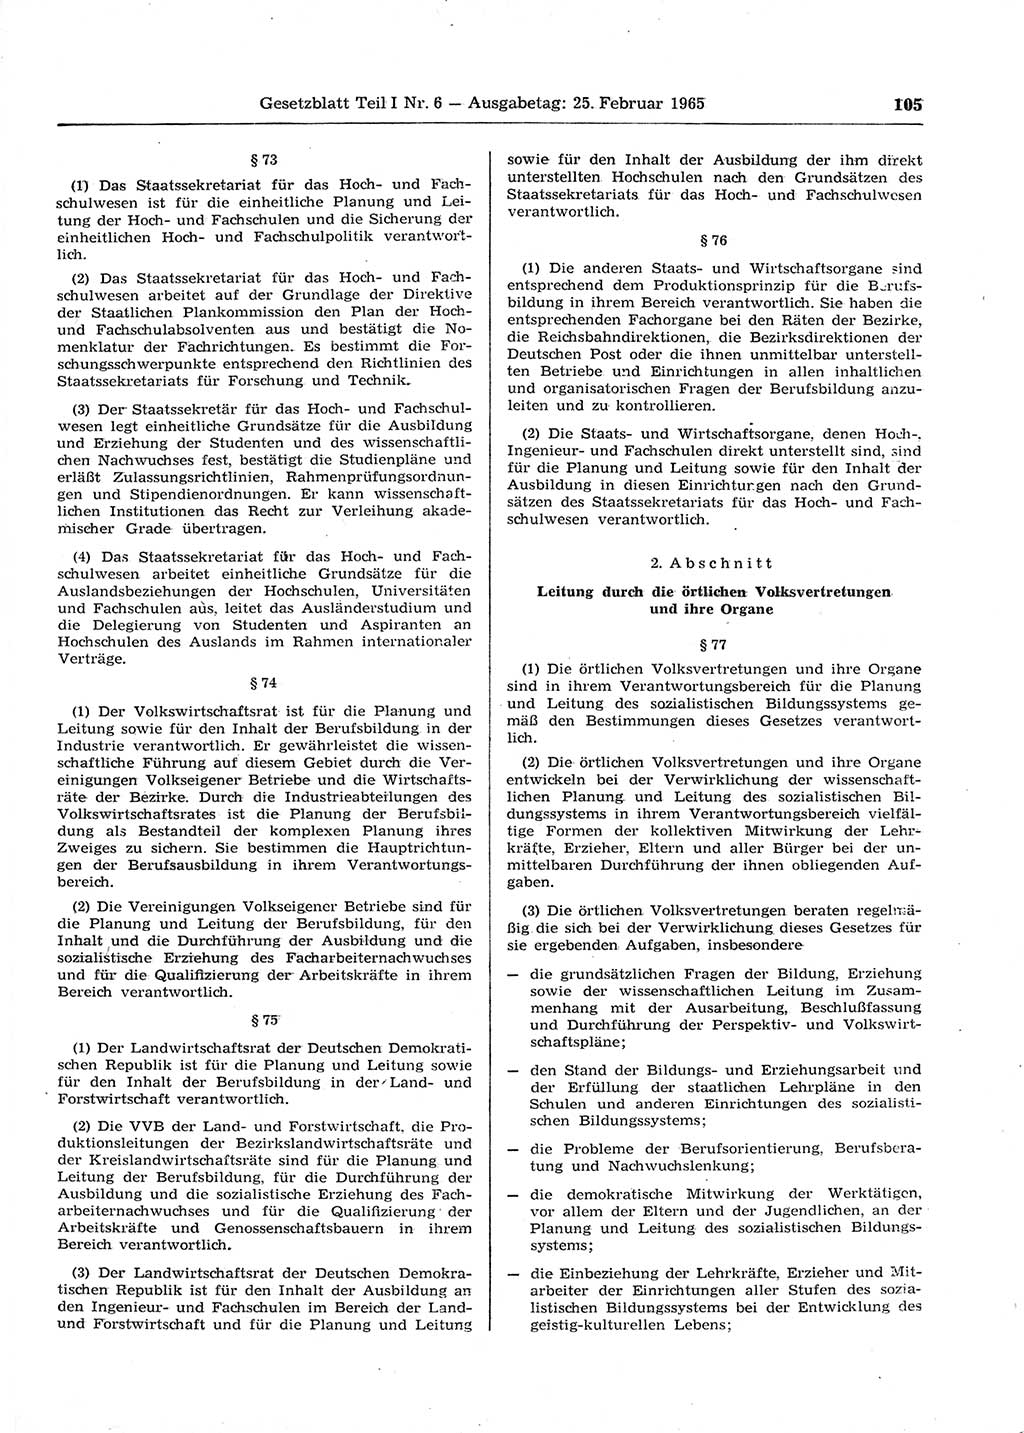 Gesetzblatt (GBl.) der Deutschen Demokratischen Republik (DDR) Teil Ⅰ 1965, Seite 105 (GBl. DDR Ⅰ 1965, S. 105)